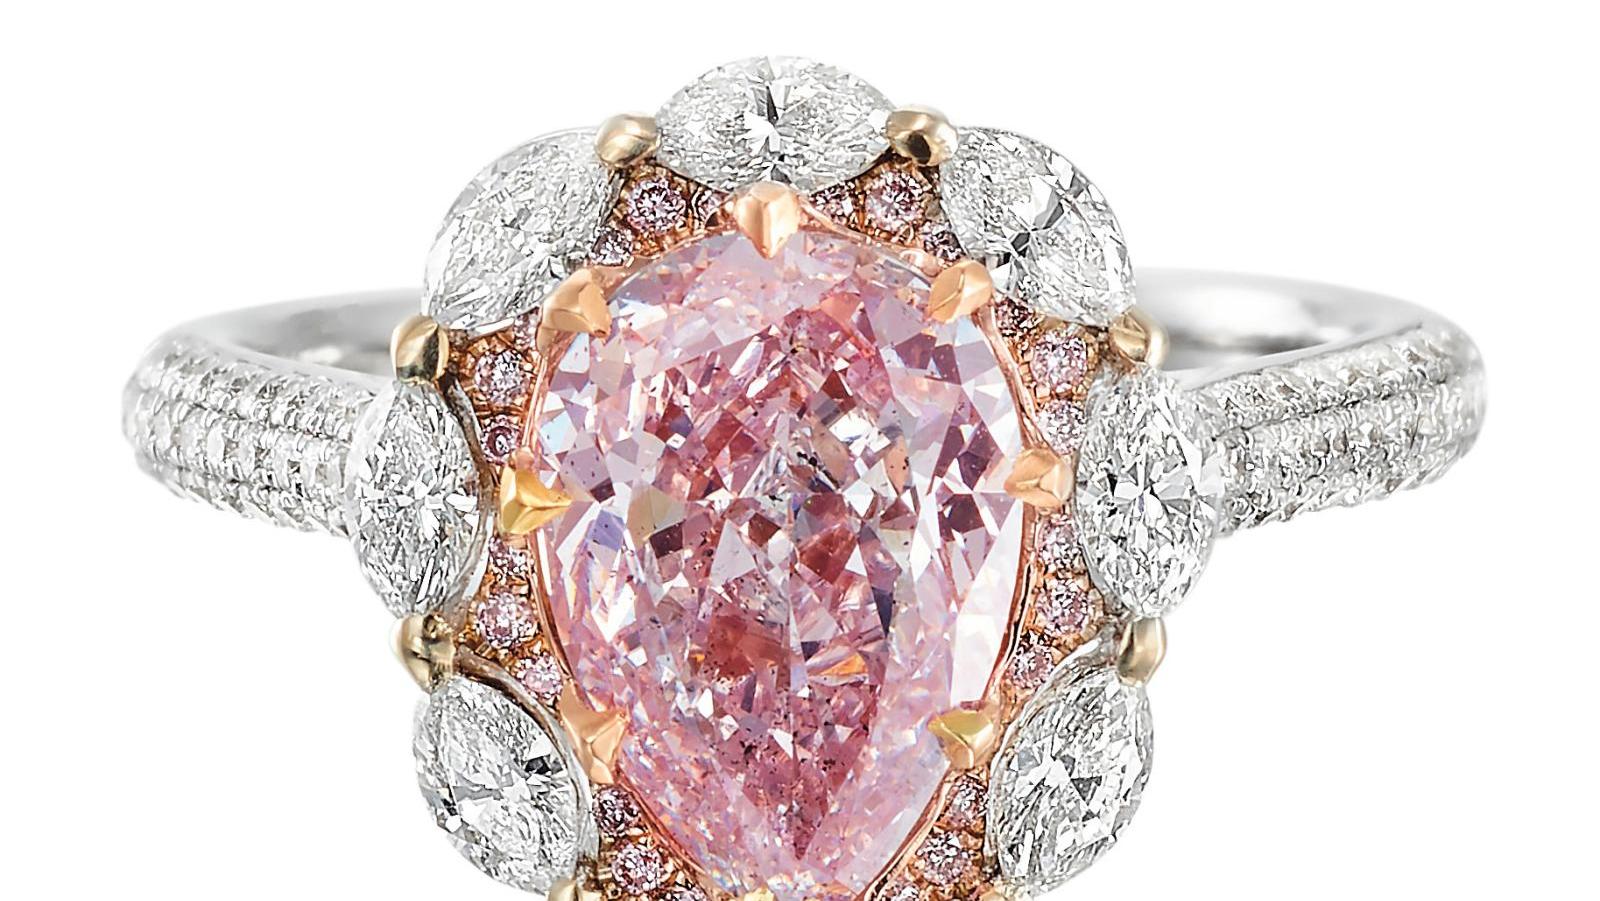 Bague en or bicolore, ornée d’un diamant naturel de couleur rose en forme de poire... 2021, année du rose avec un diamant !